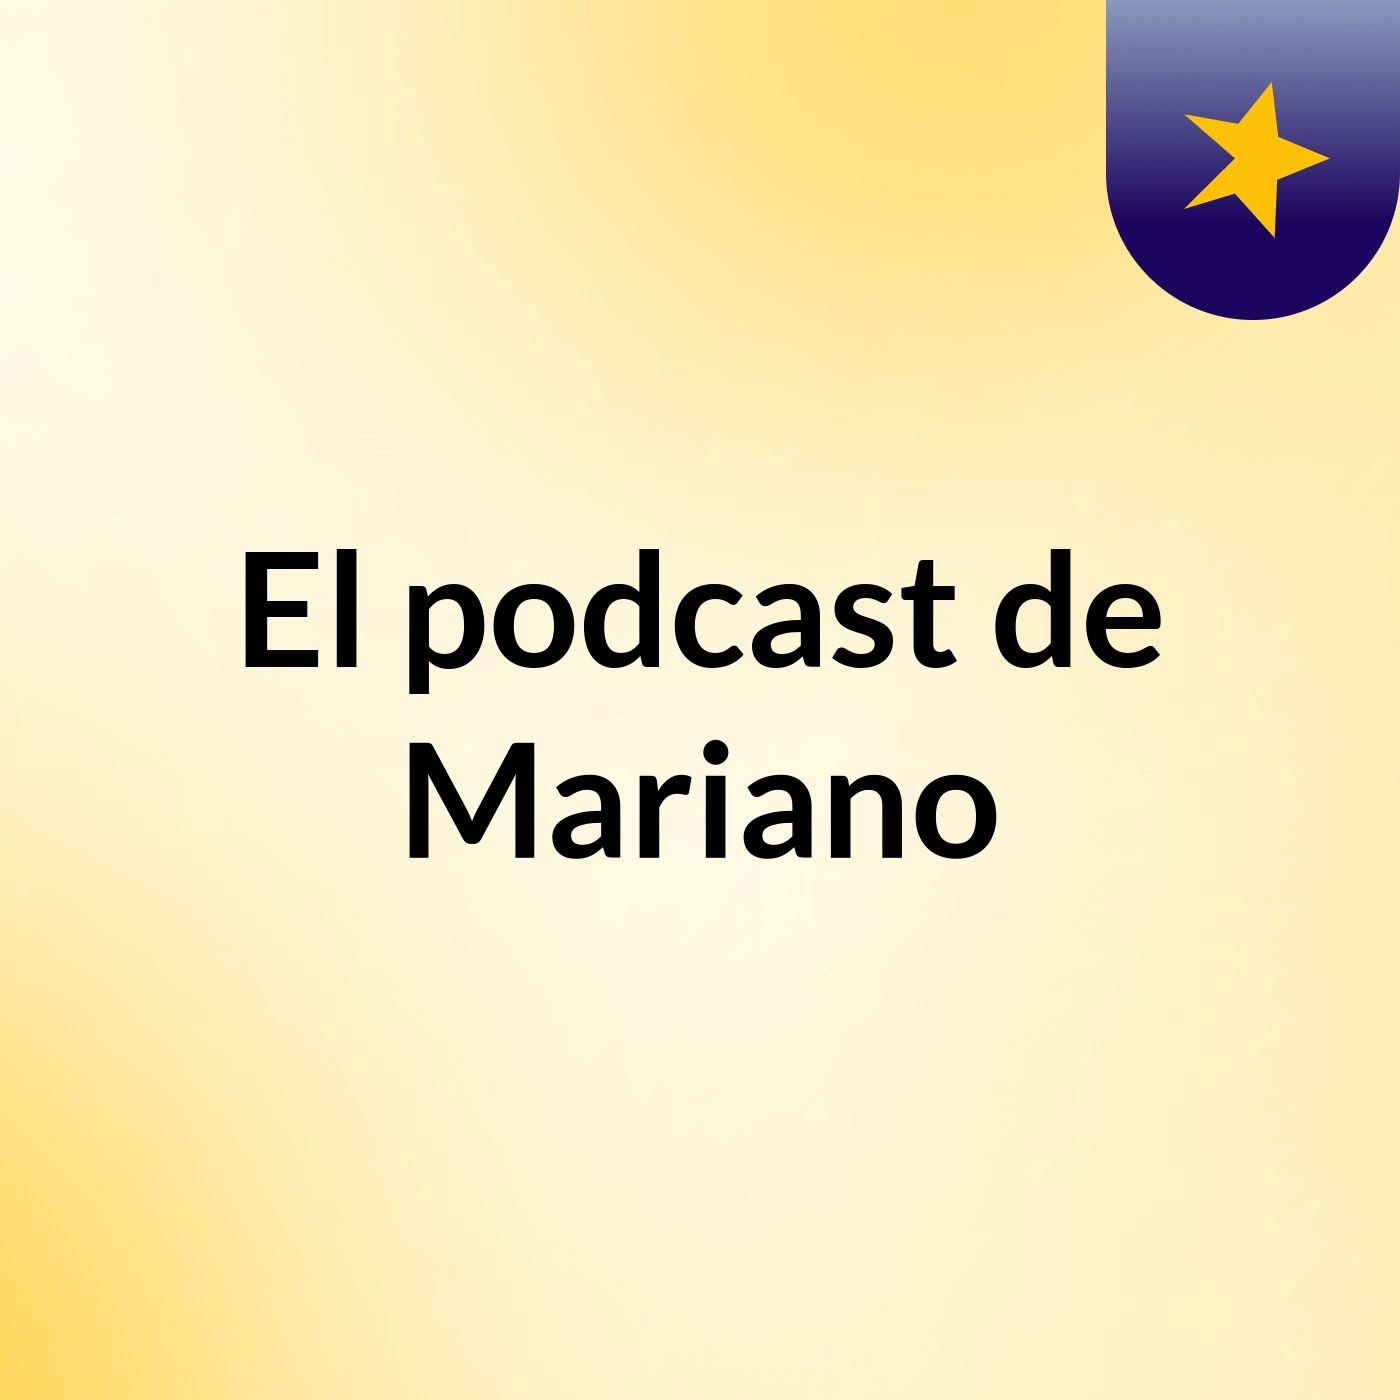 El podcast de Mariano